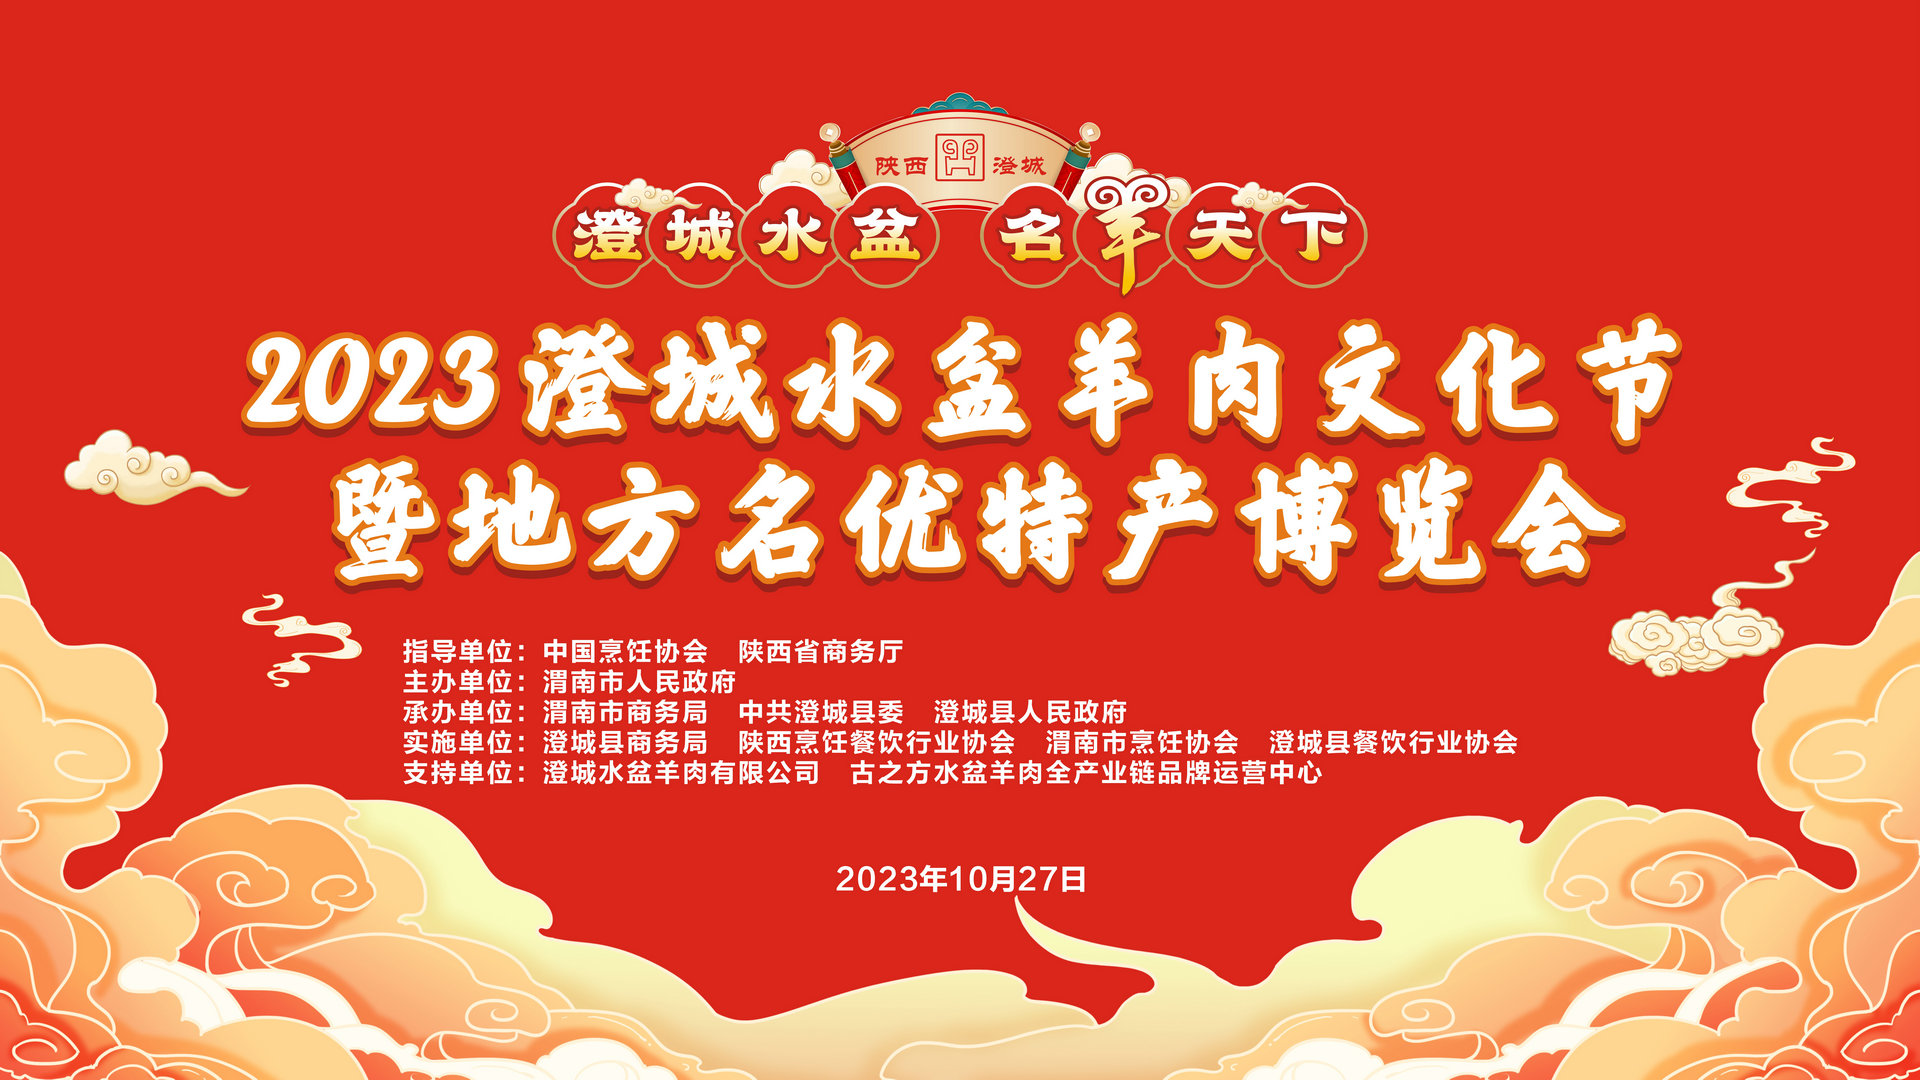 【直播回看】2023澄城水盆羊肉文化节暨地方名优特产博览会